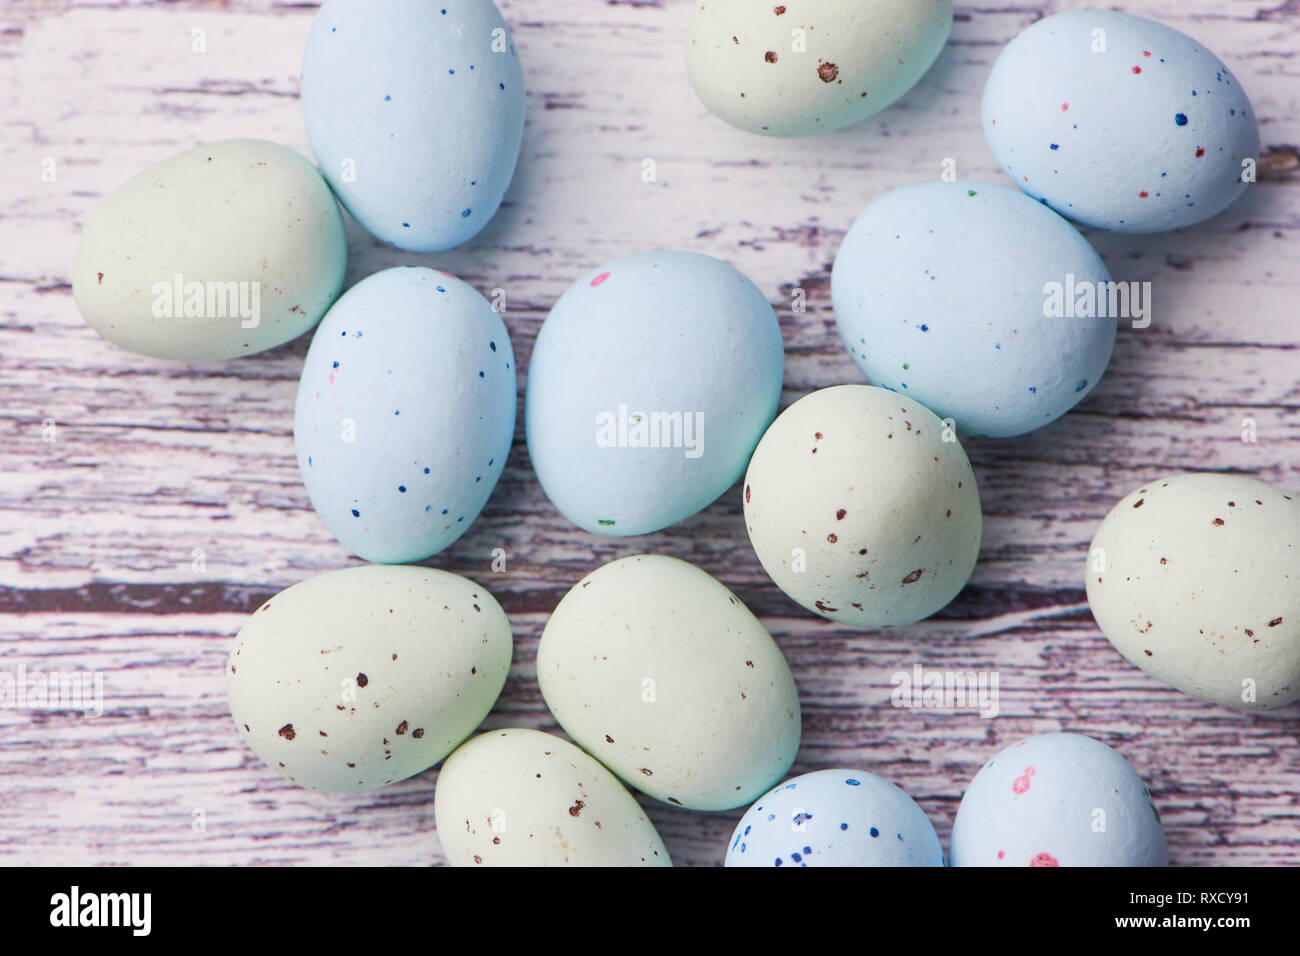 Jaune et bleu sur fond blanc oeufs dragee fond de bois, macro photo couleur Banque D'Images